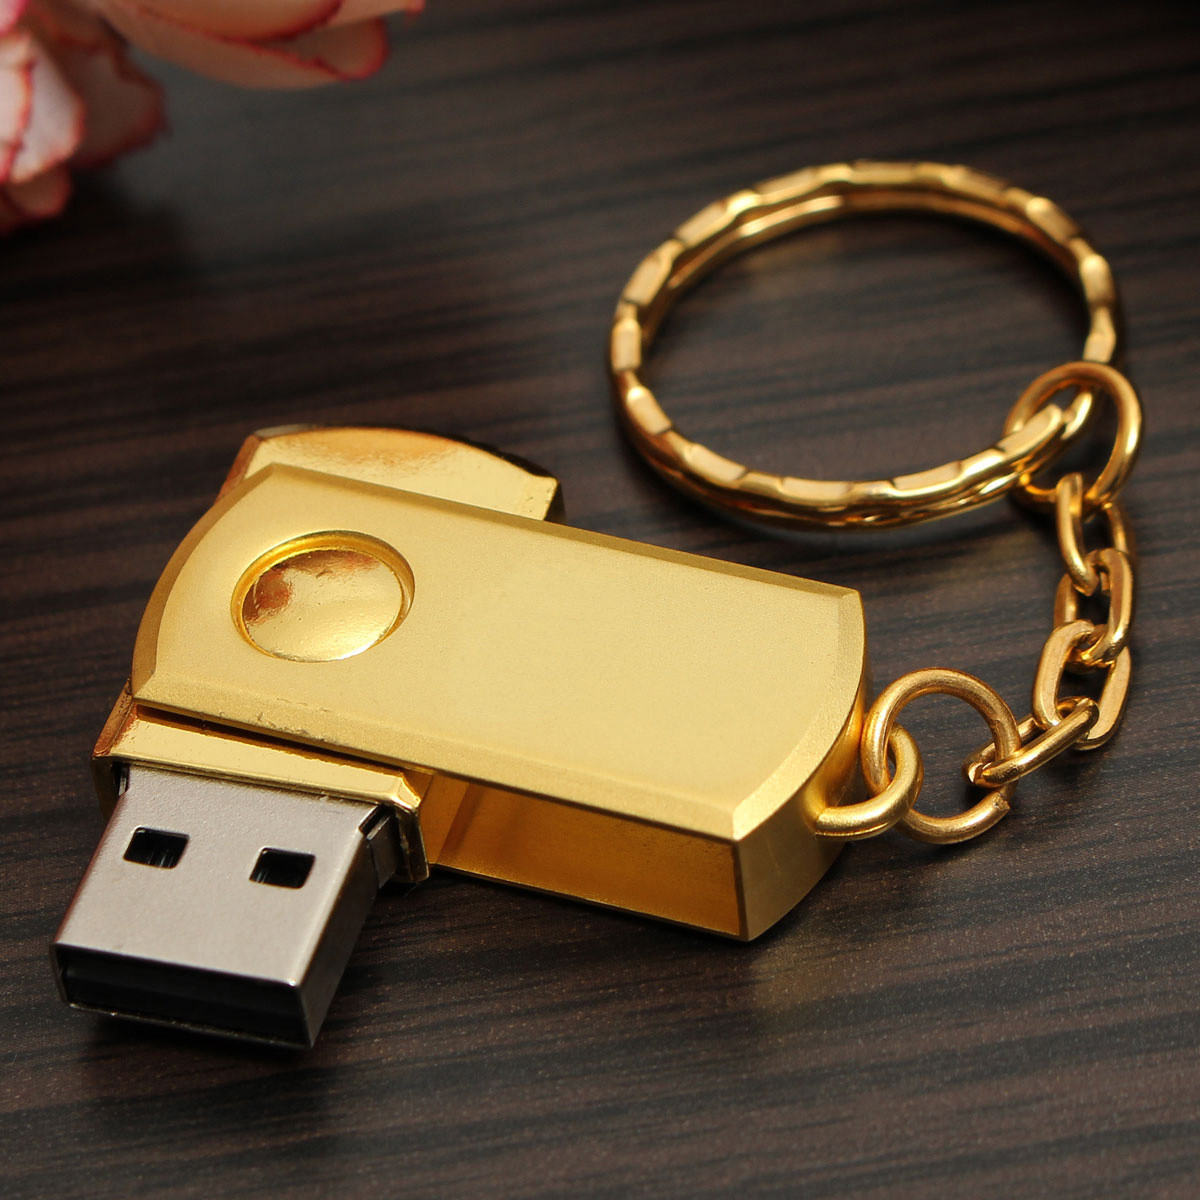 Купить флешку для интернета. Переносная флешка. USB Stick. Флешка диск. USB Disk изнутри.